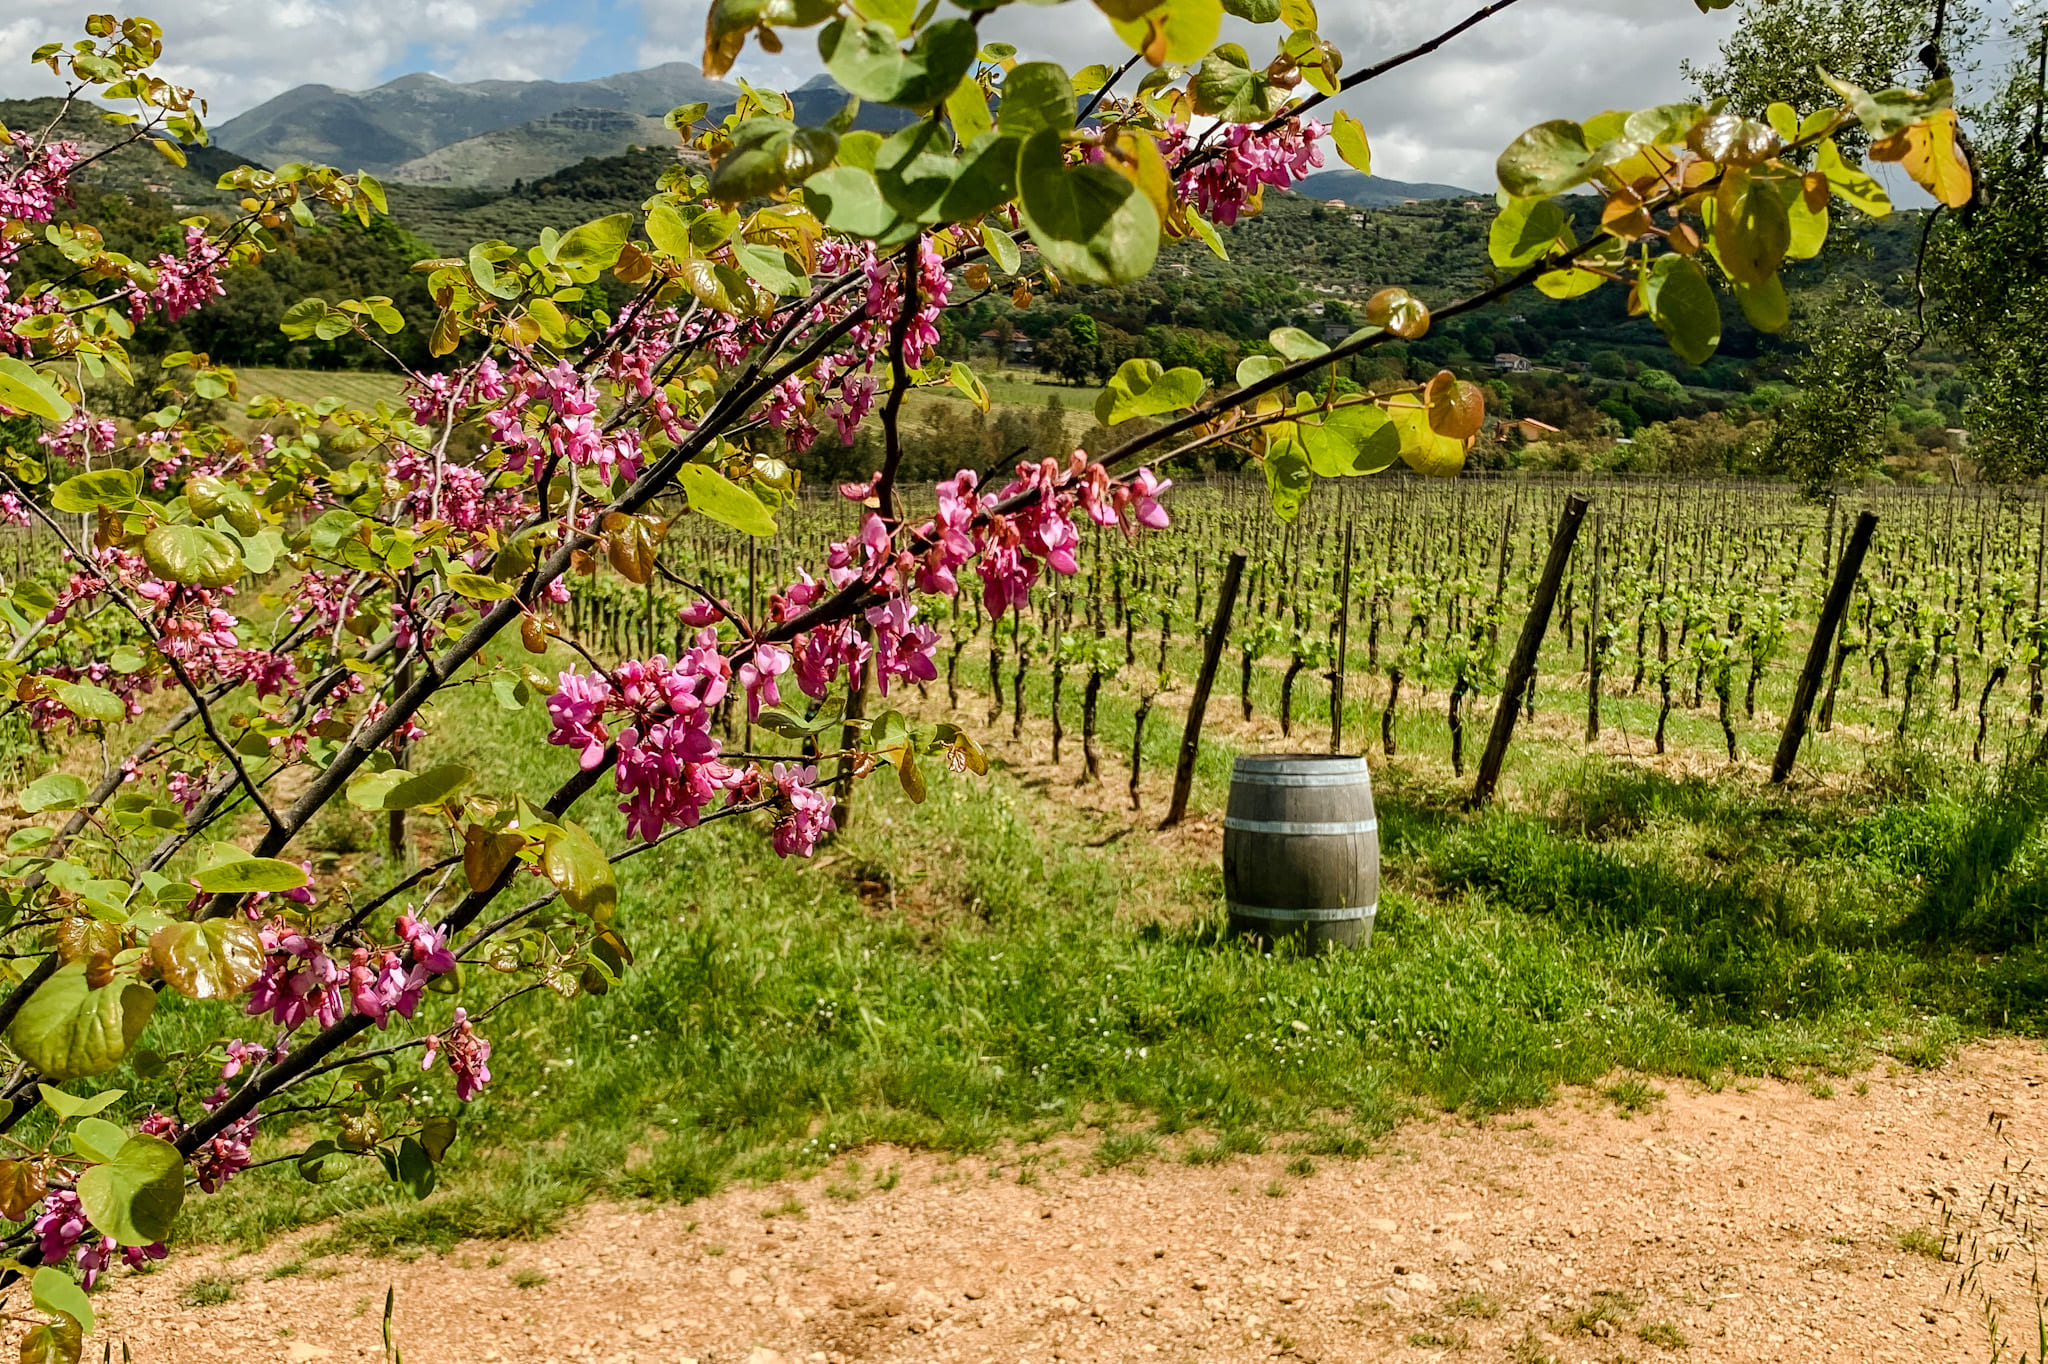 L'azienda agricola Monti Cecubi produce vini biologici ed è un eccellenza del territorio laziale.